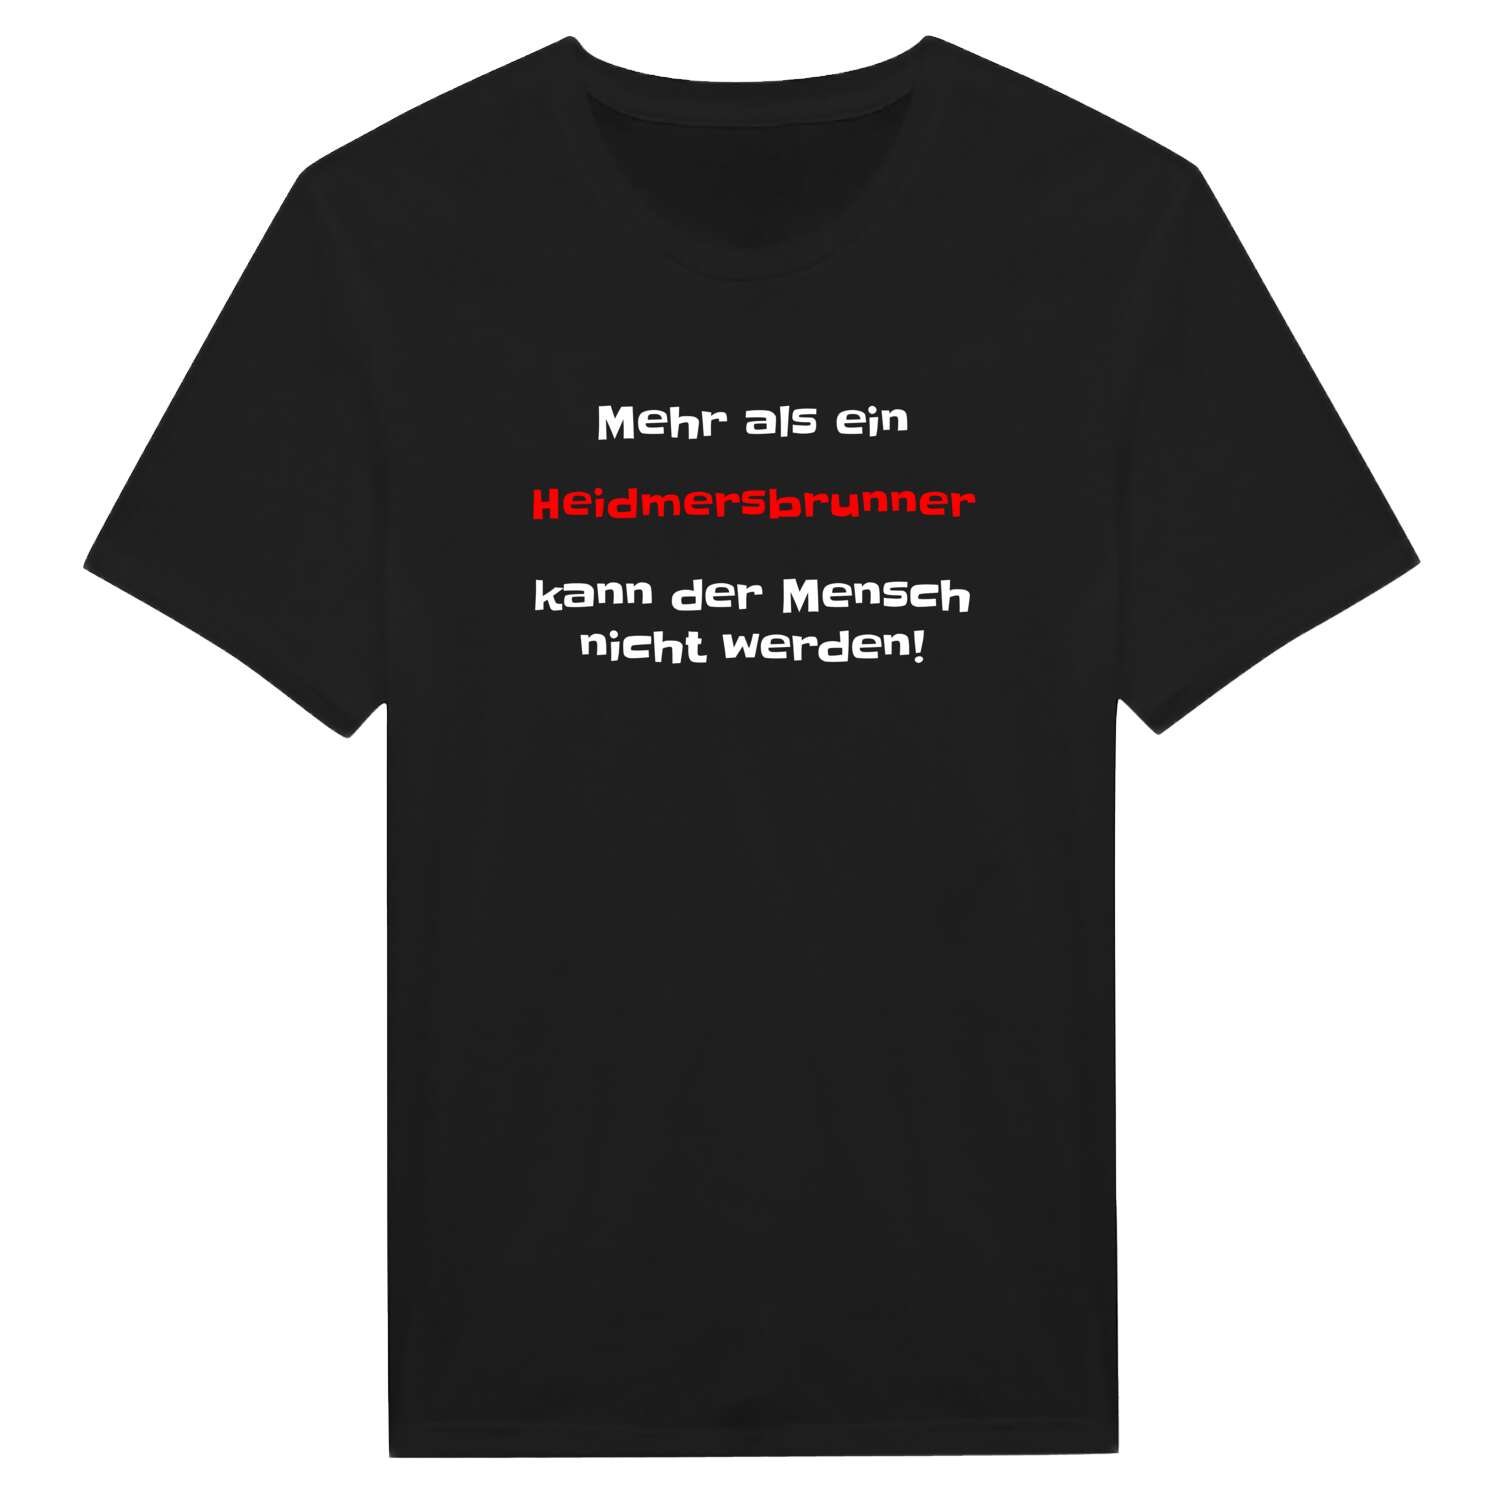 Heidmersbrunn T-Shirt »Mehr als ein«